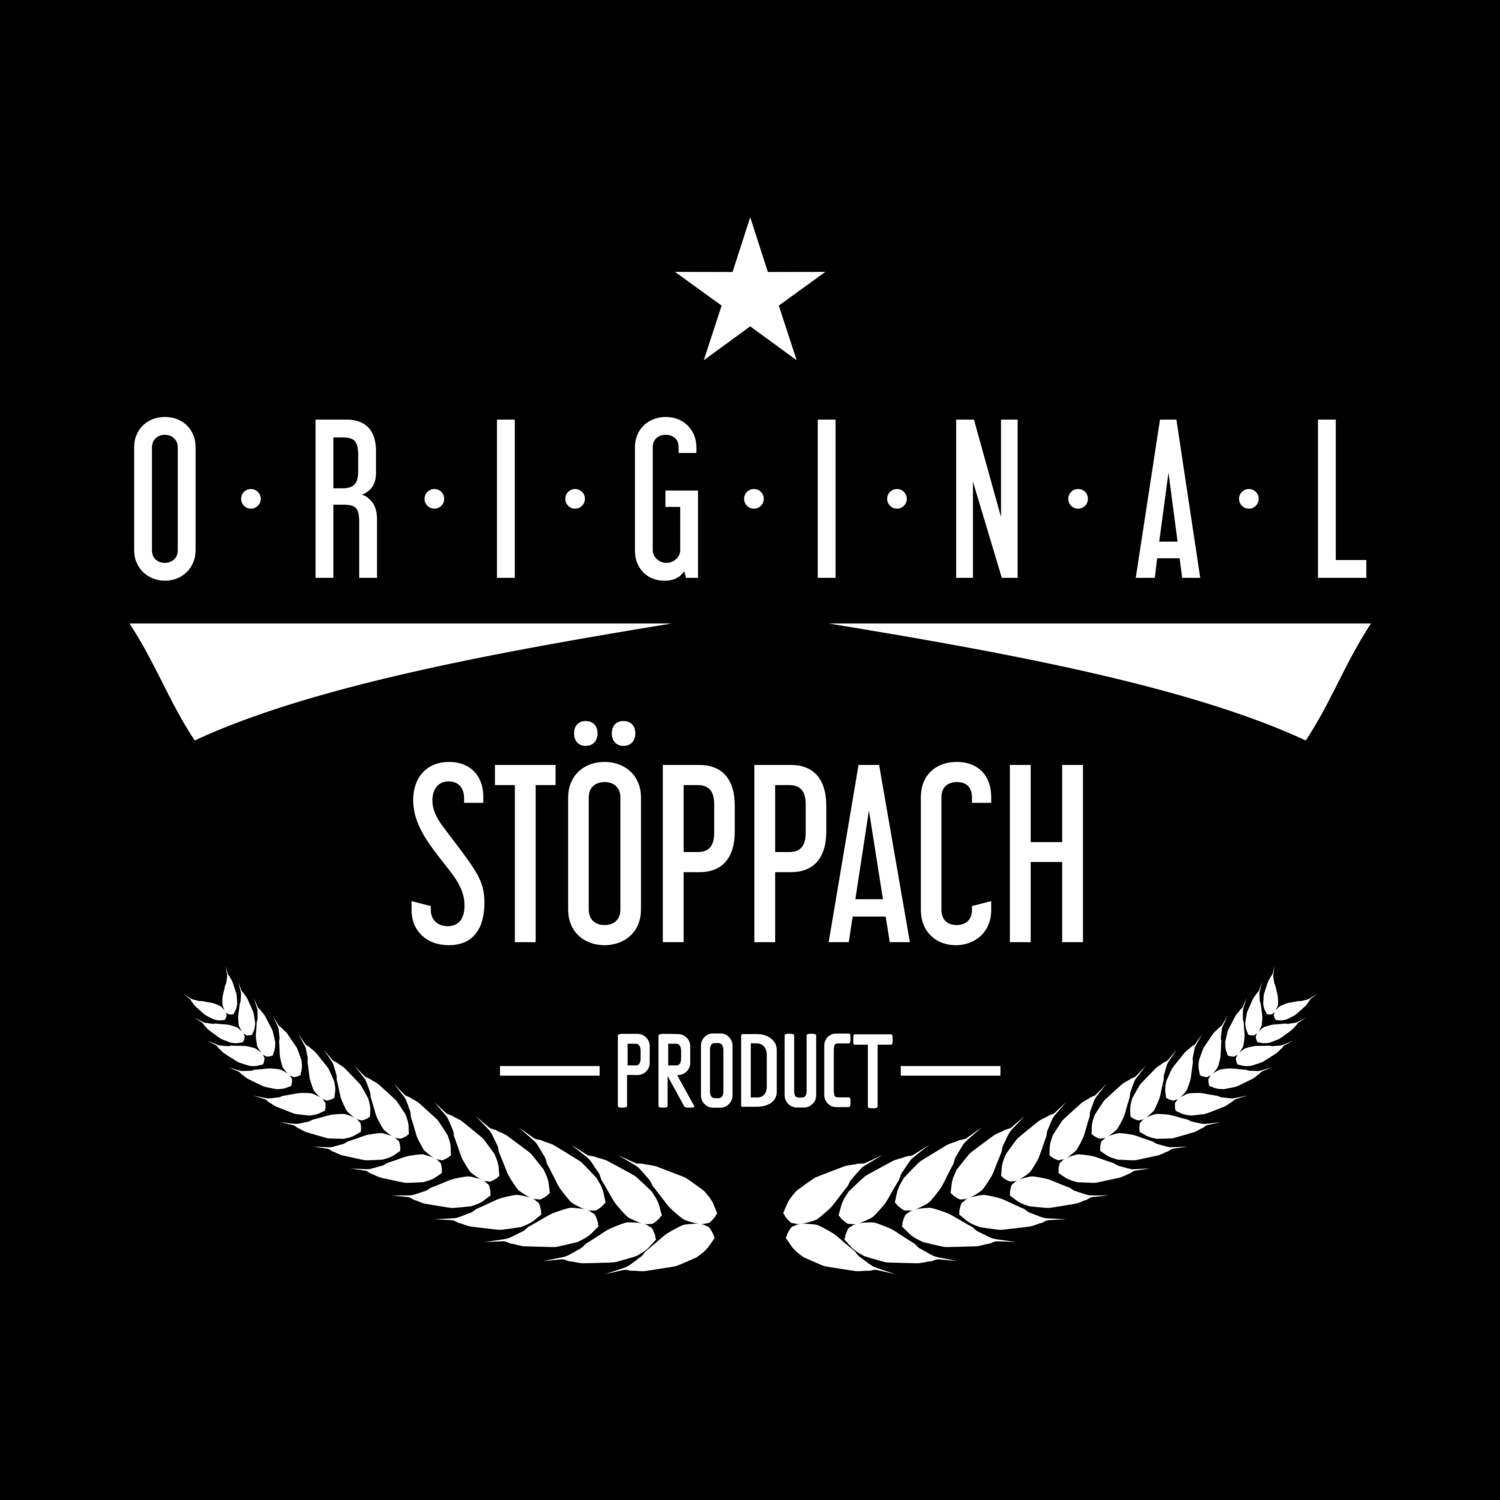 Stöppach T-Shirt »Original Product«